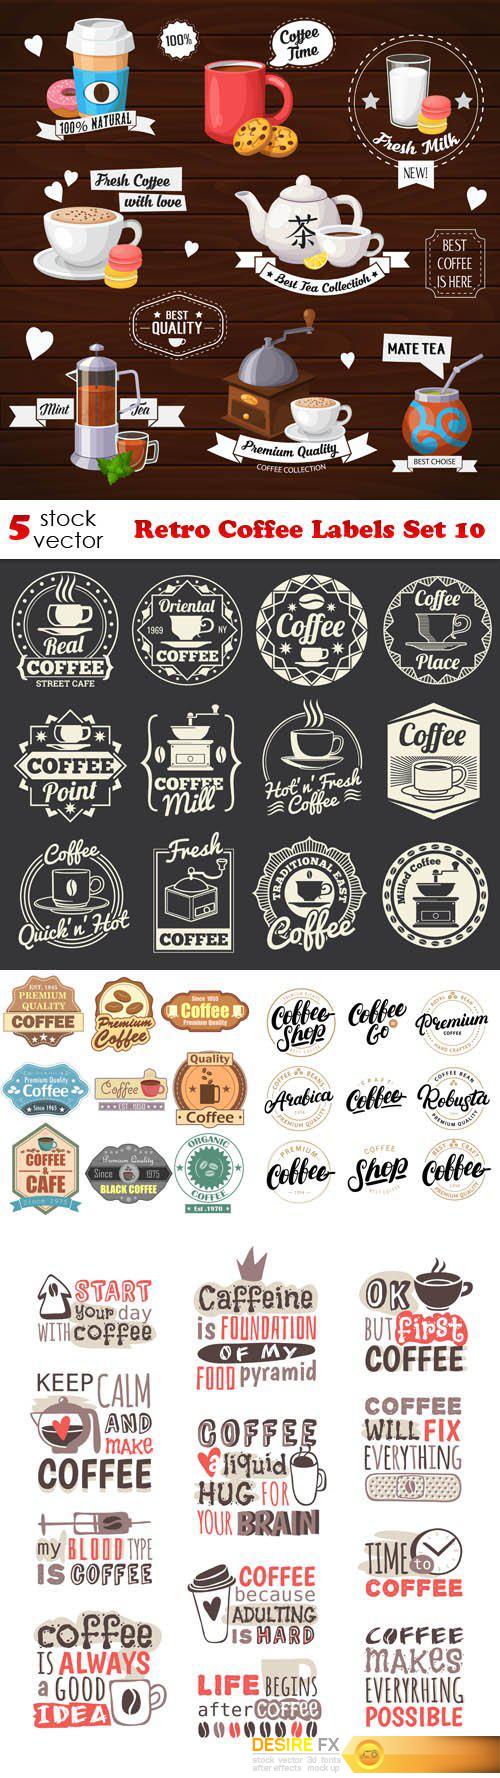 Vectors - Retro Coffee Labels Set 10